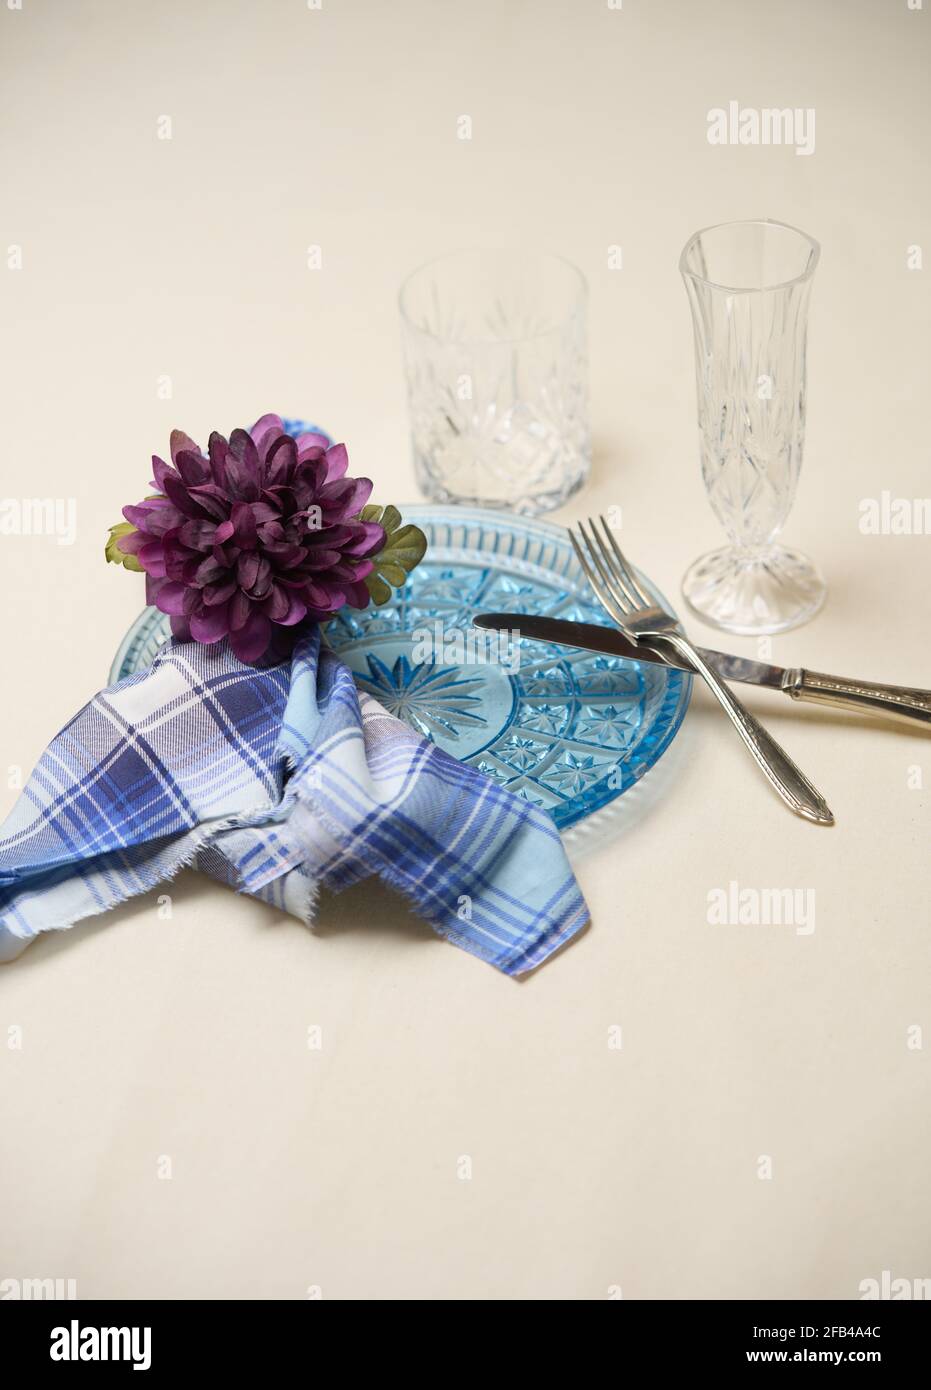 ronds de serviettes faits main avec fleurs artificielles Banque D'Images